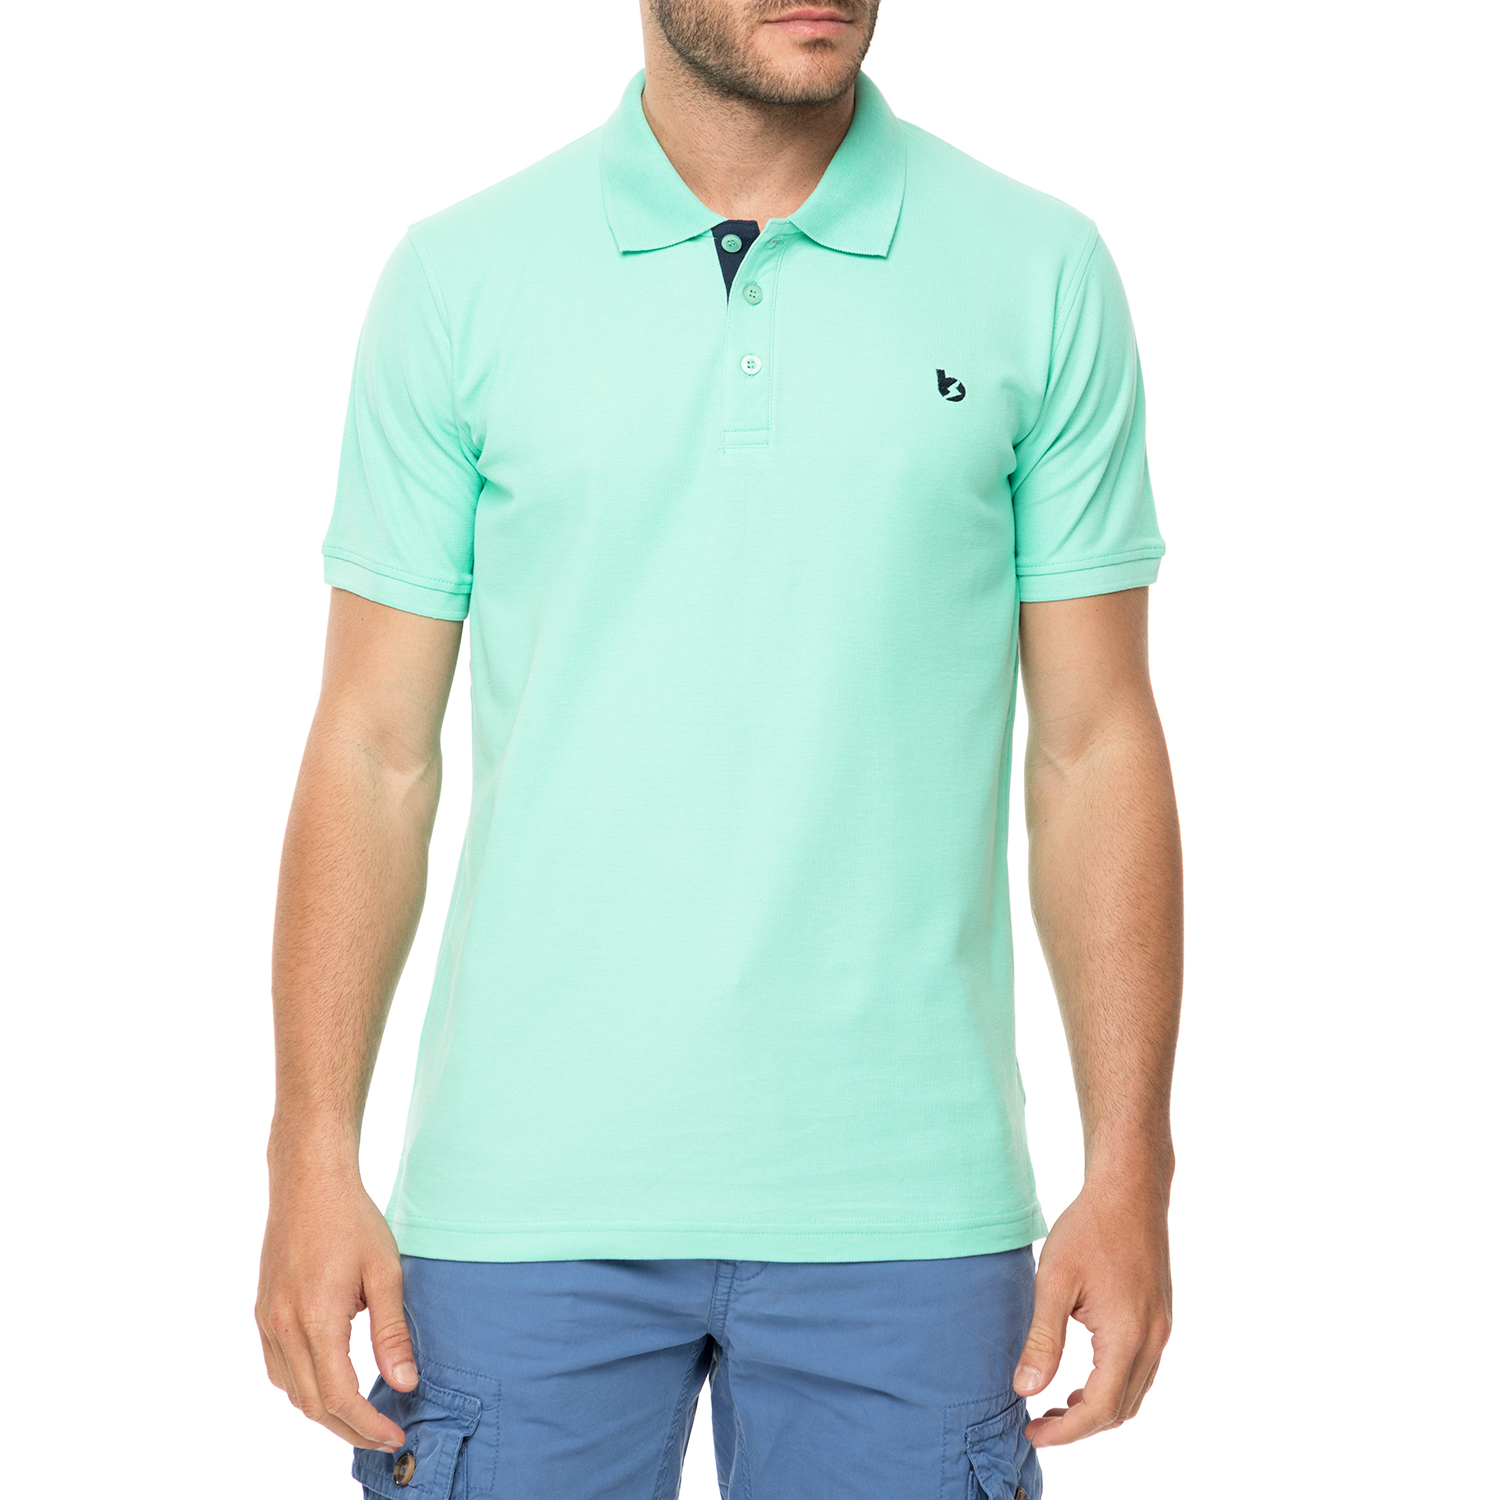 Ανδρικά/Ρούχα/Μπλούζες/Πόλο BATTERY - Ανδρικό πόλο t-shirt BATTERY ανοιχτό πράσινο